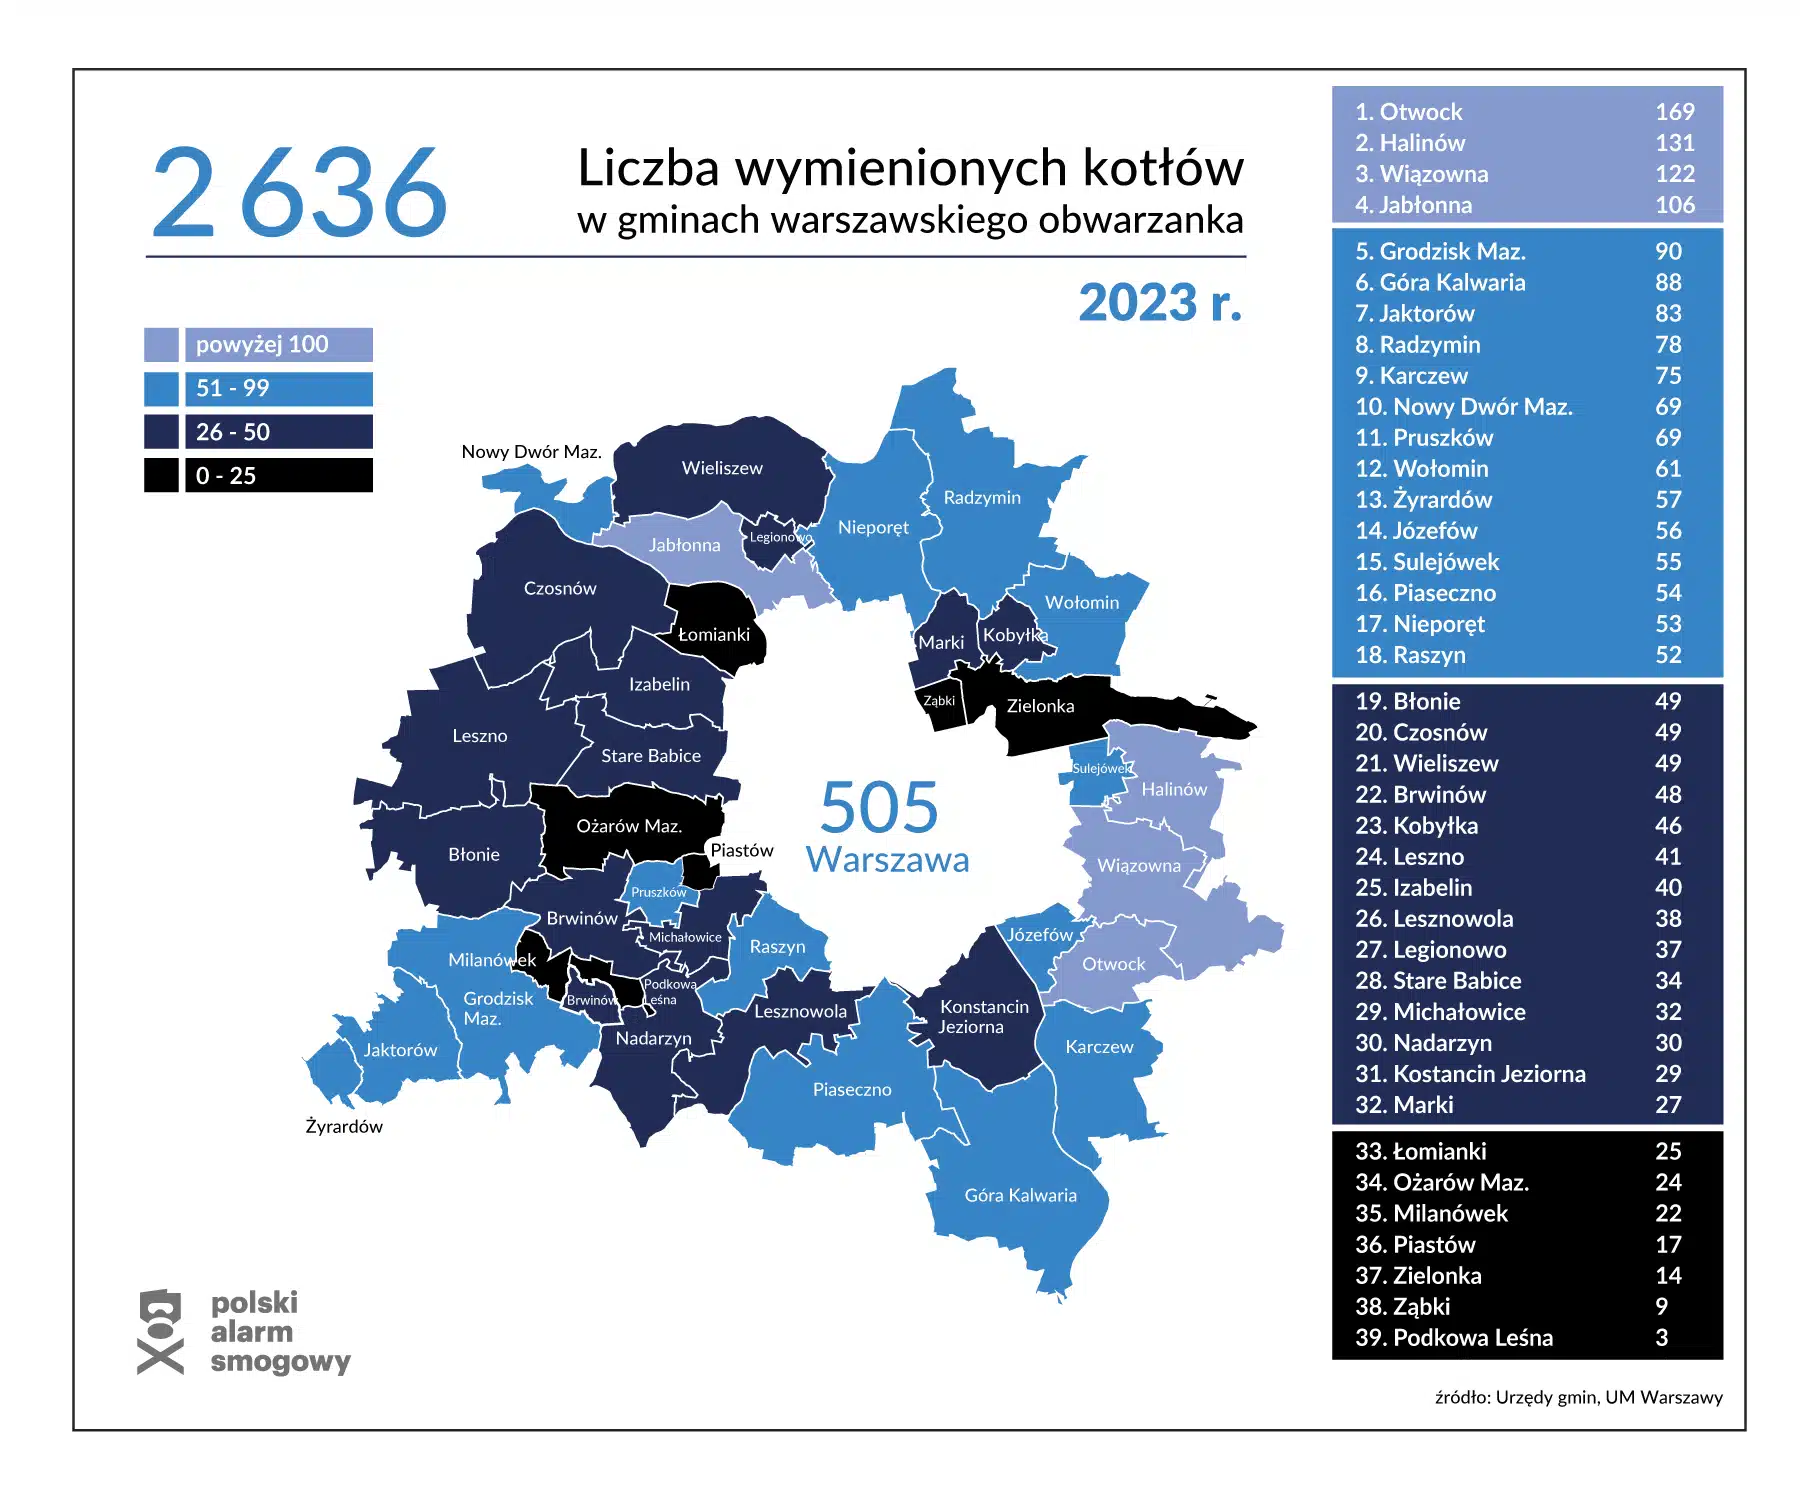 Mapa Warszawy i okolicznych miejscowości z zaznaczoną liczbą wymienionych kotłów.